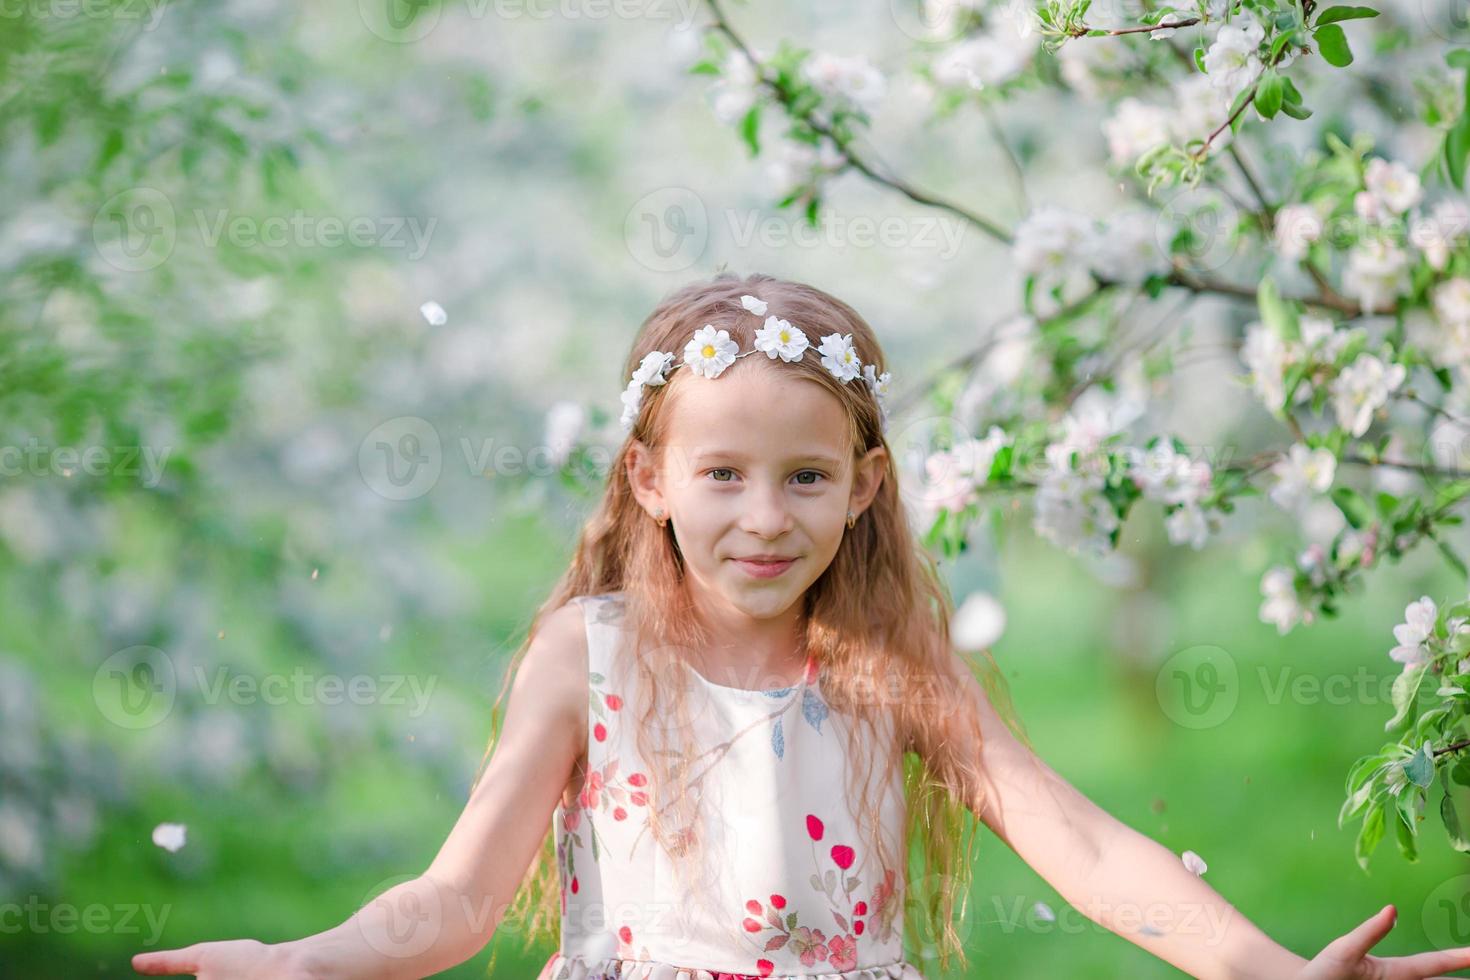 menina adorável no jardim de macieiras florescendo na primavera foto